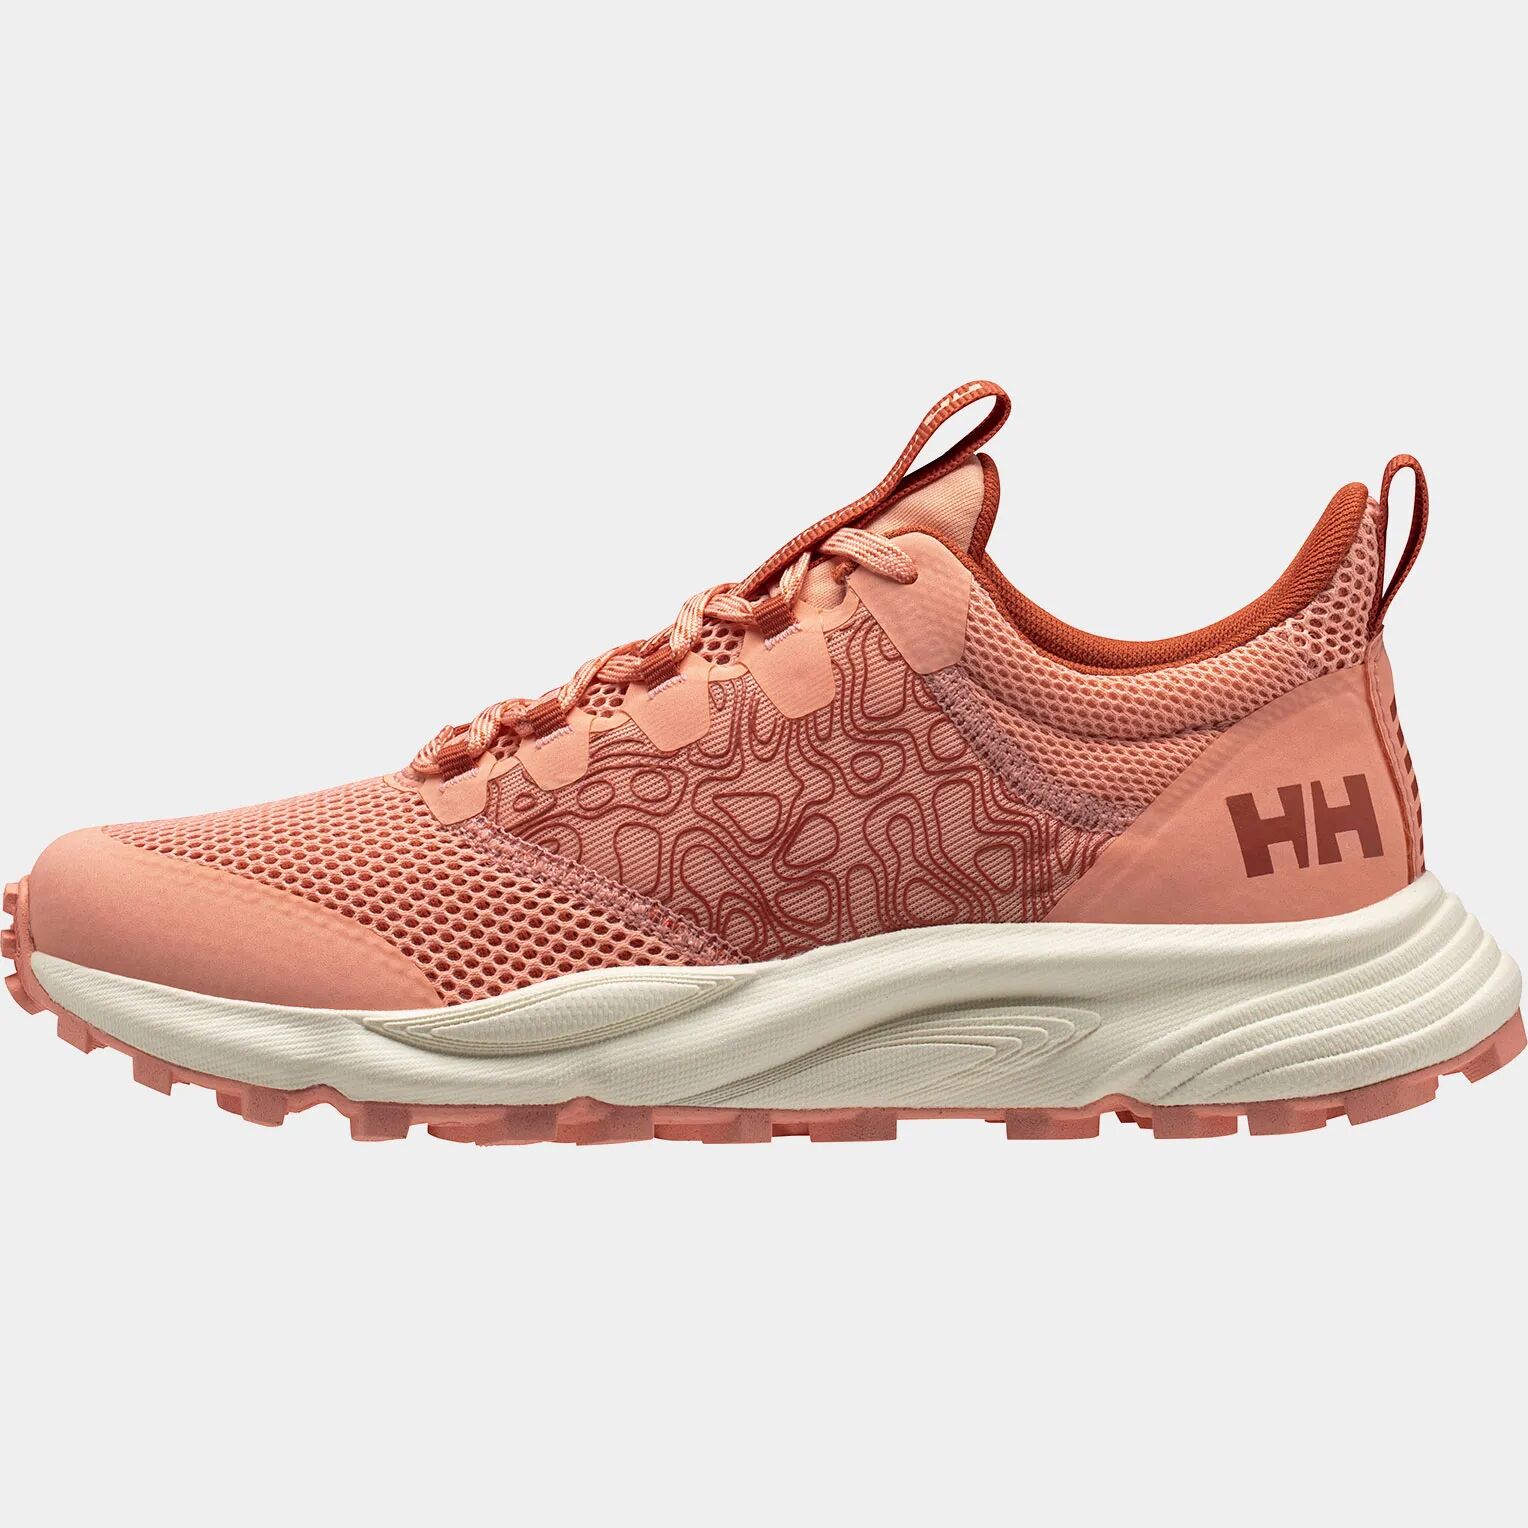 Helly Hansen Women's Featherswift Trail Running Shoes Orange 7.5 - Rose Quartz Orange - Female